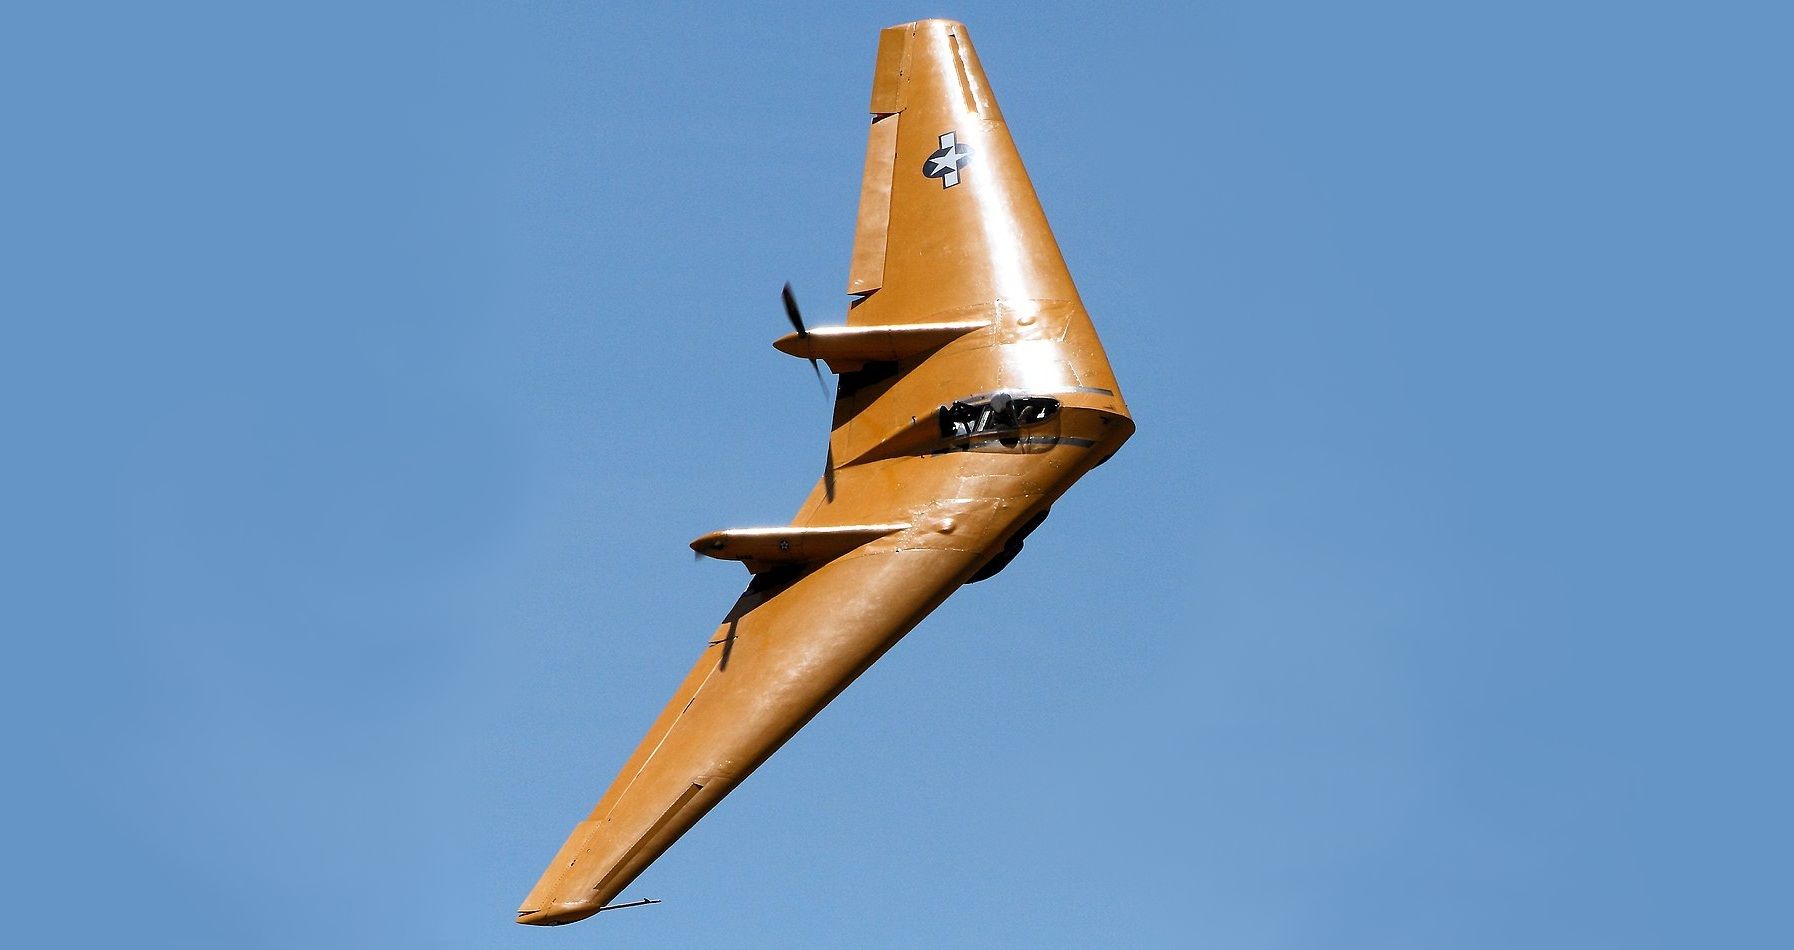 Northrop N9M Flying Wing